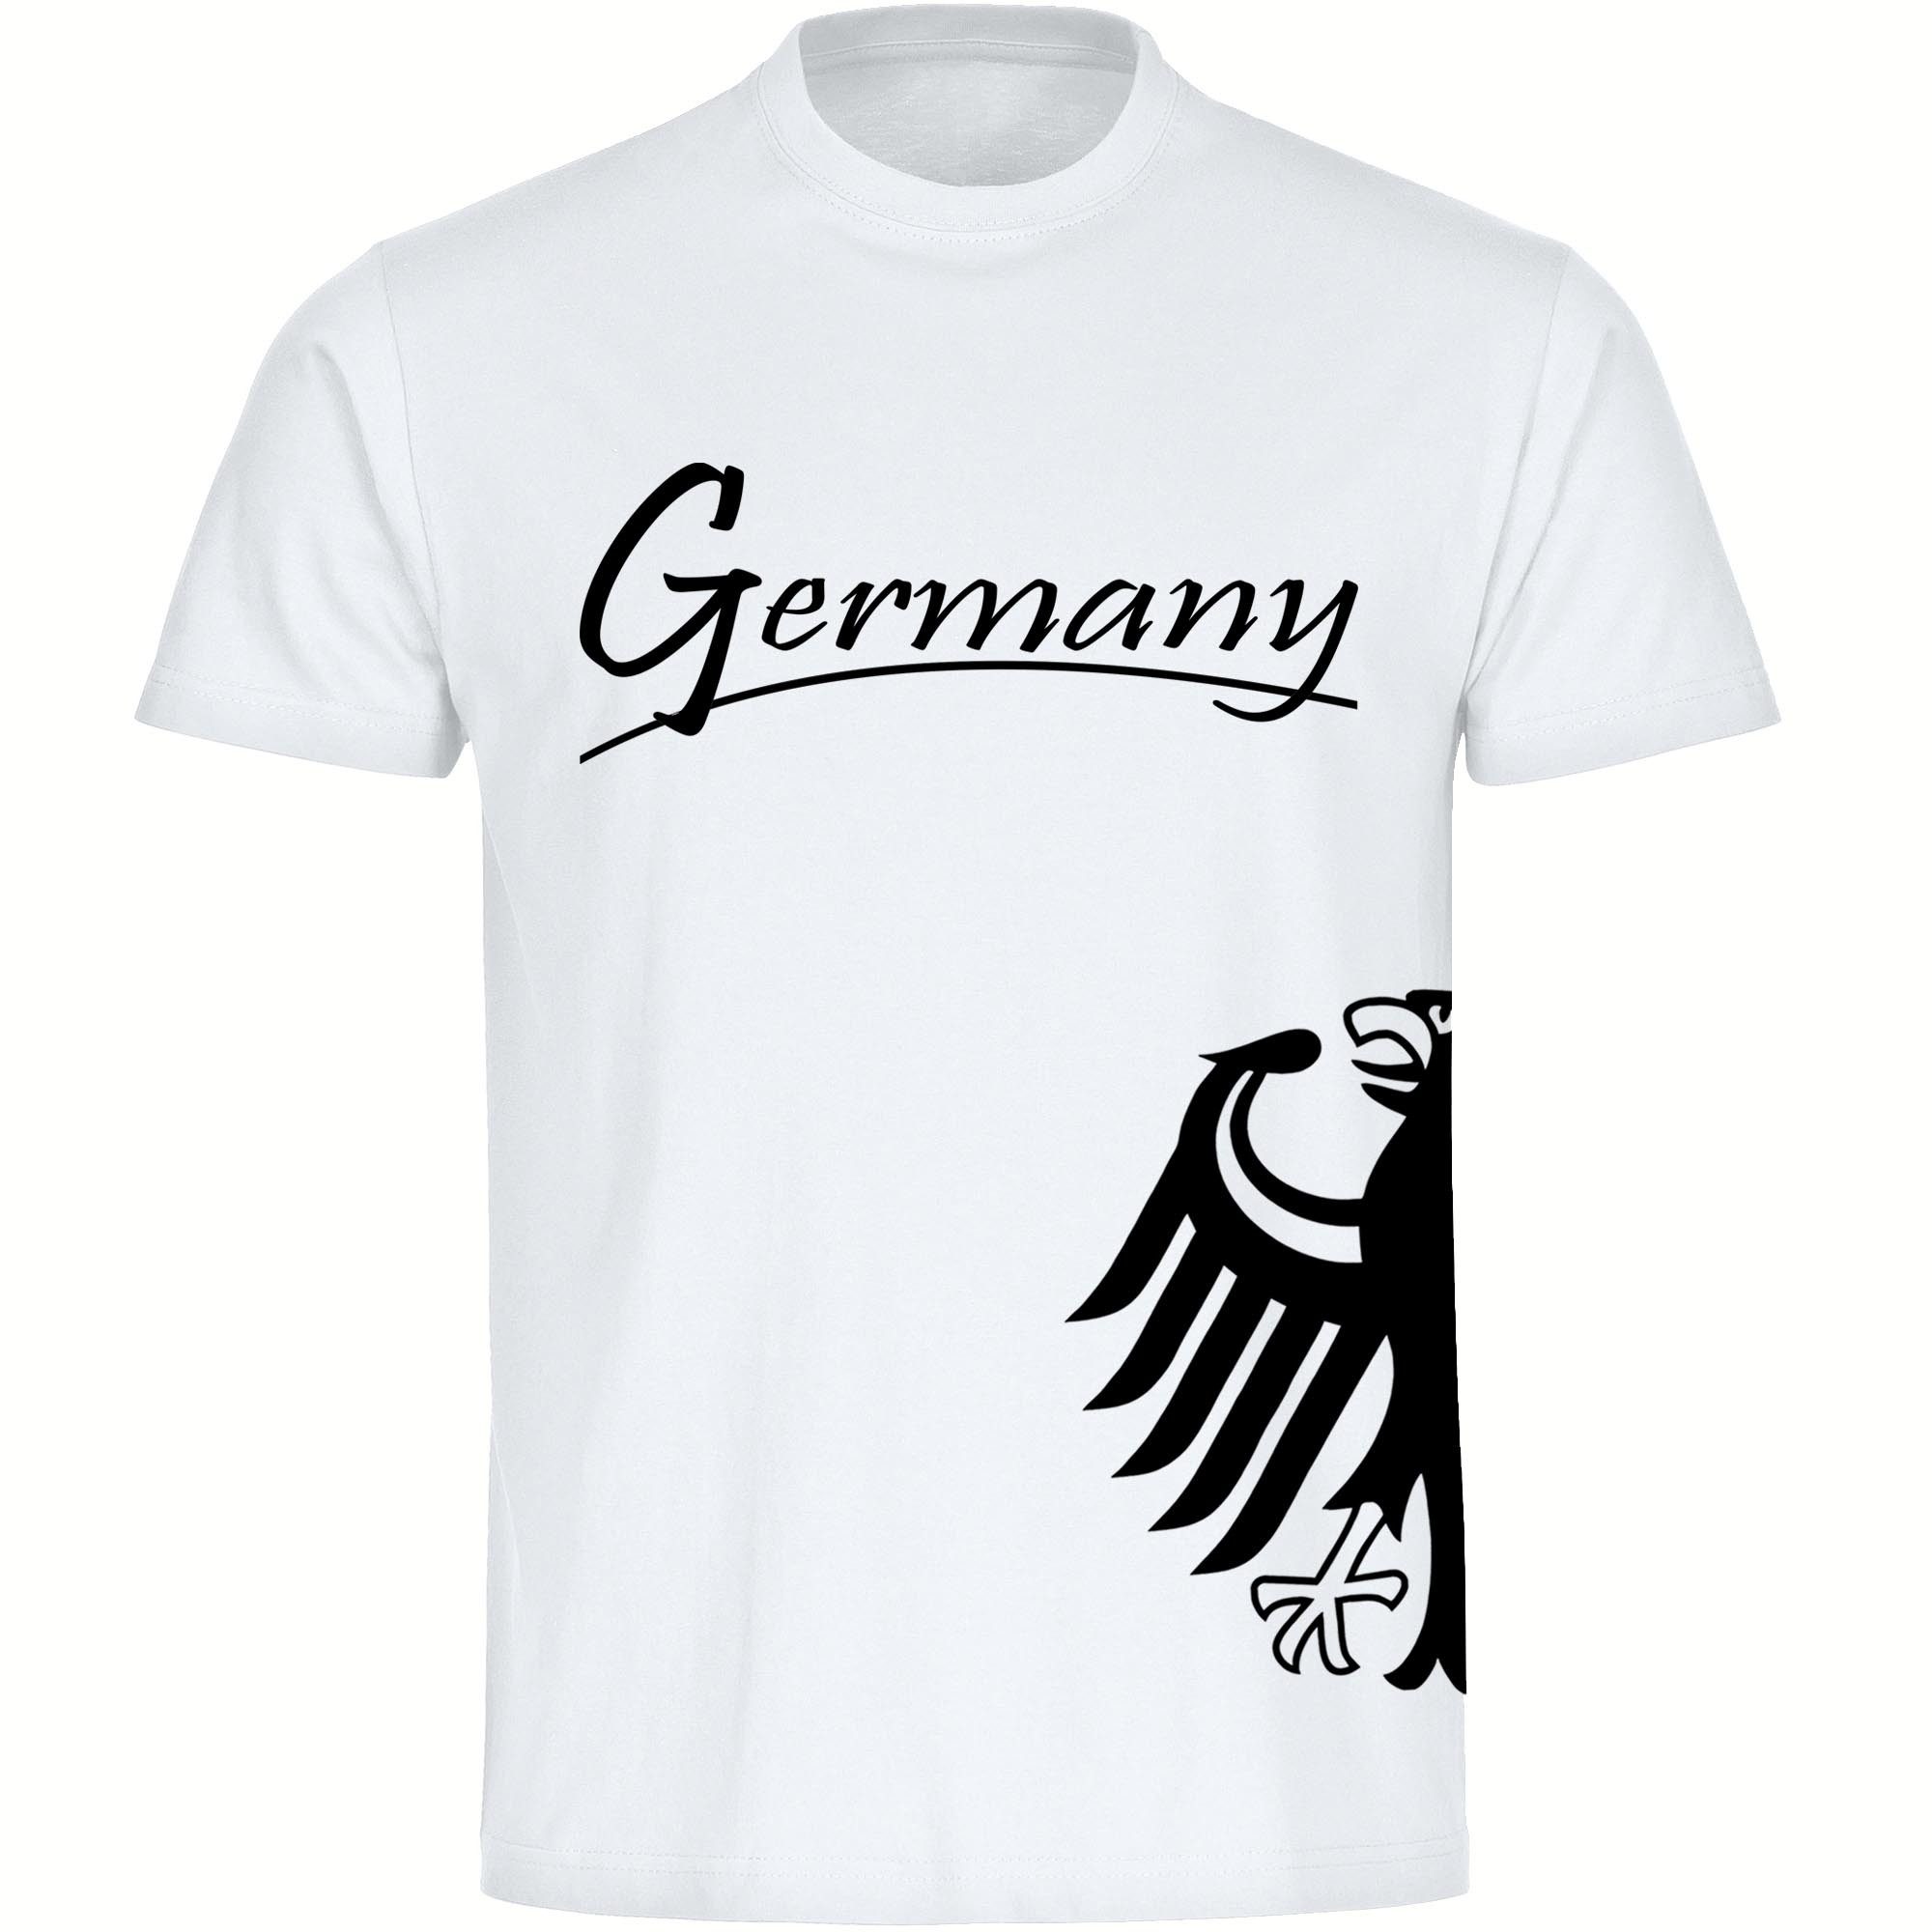 multifanshop T-Shirt Herren Germany - Adler seitlich - Männer